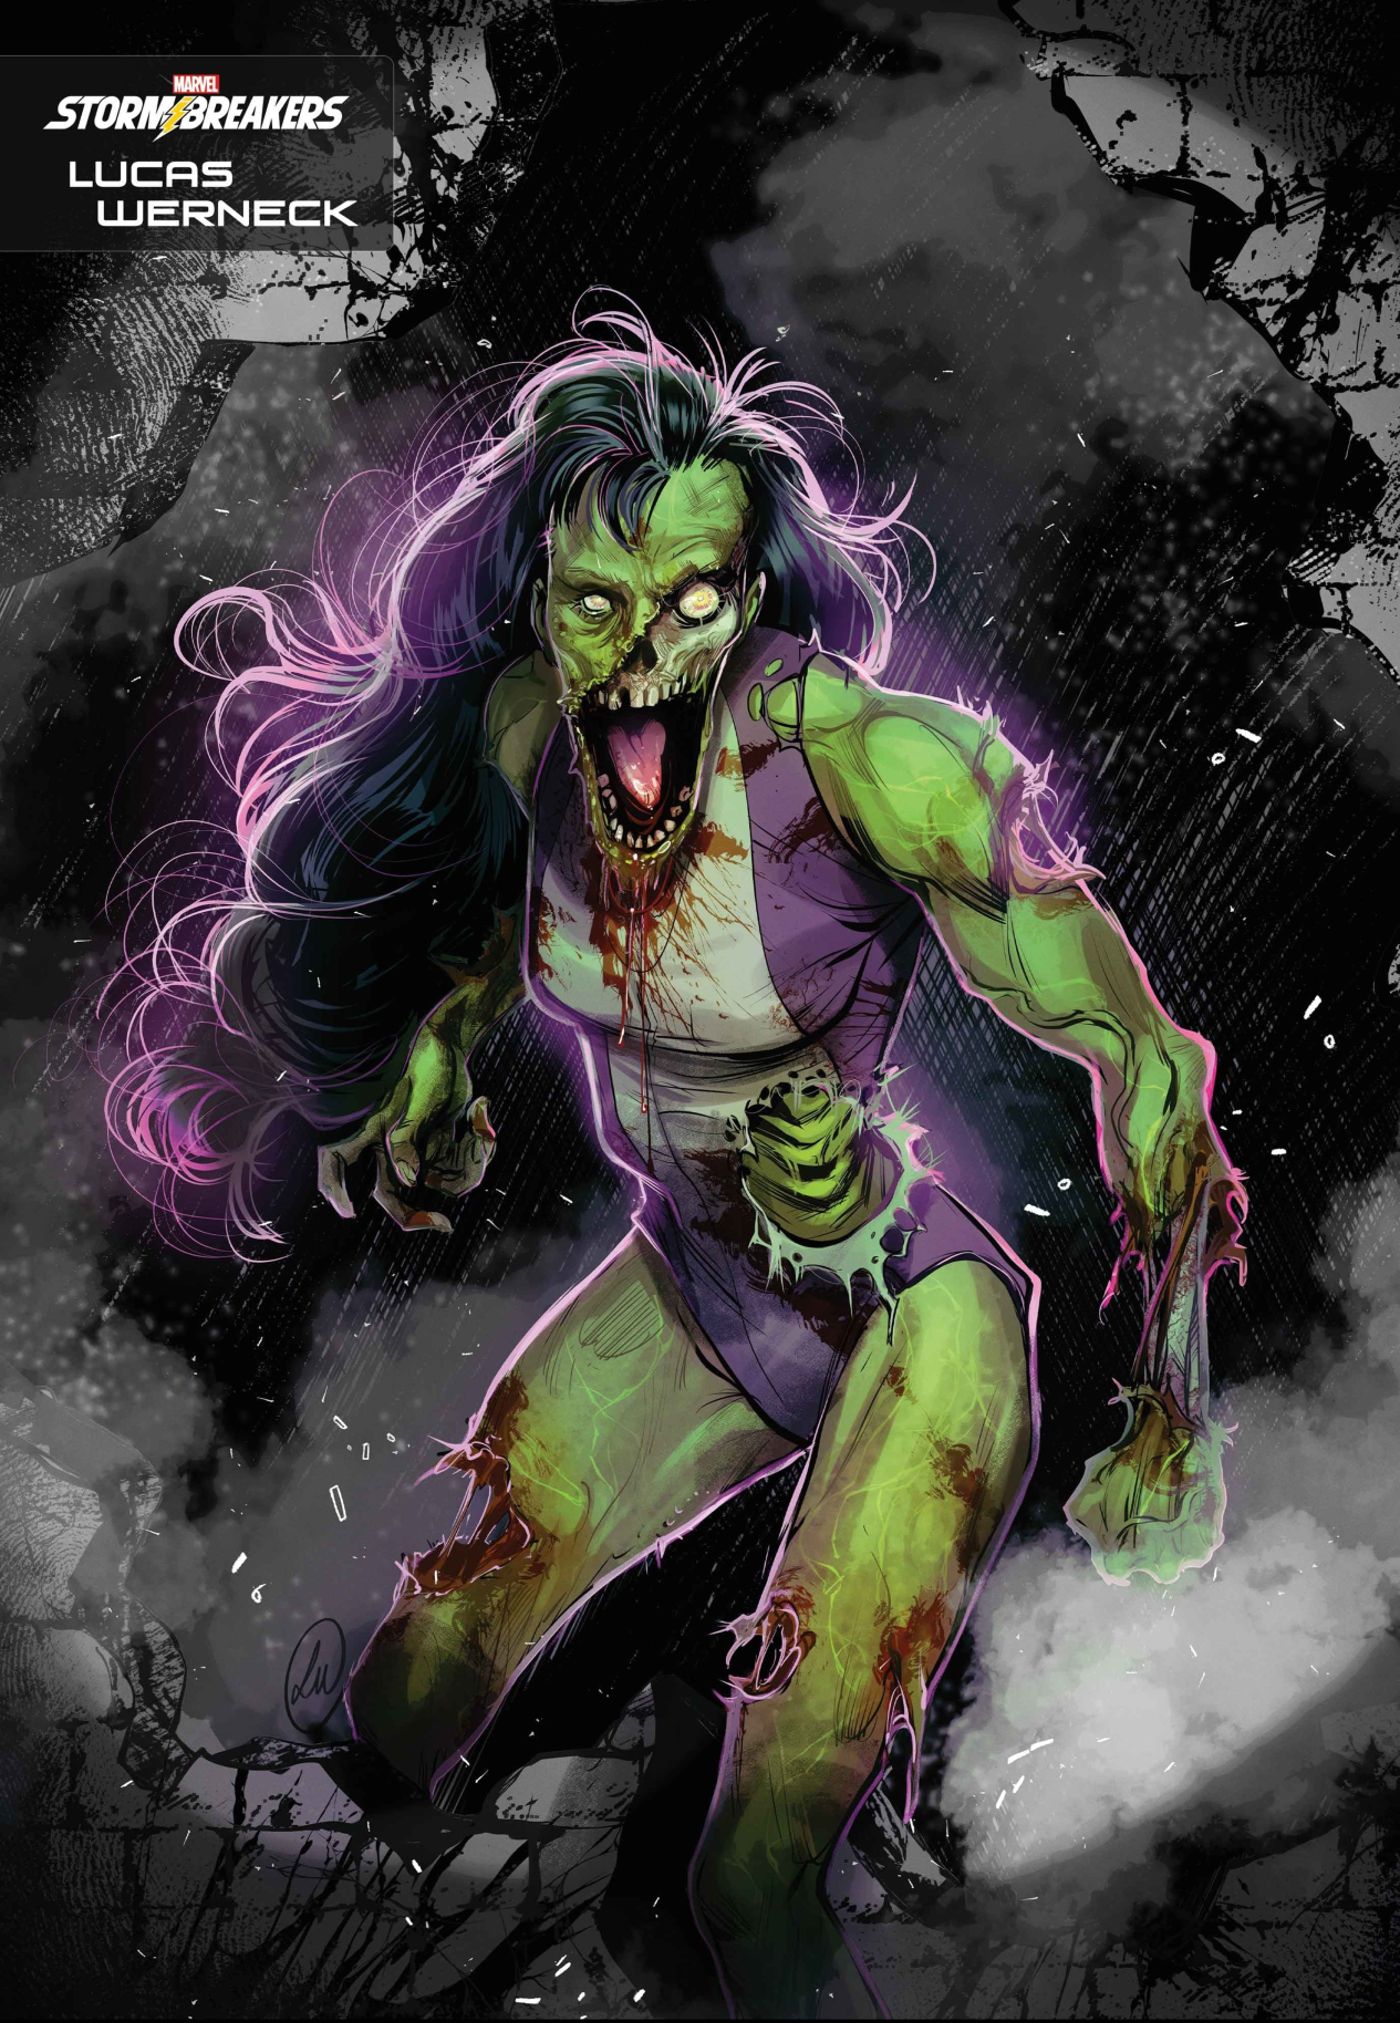 Sensational She-Hulk #1 Variant by Lucas Werneck